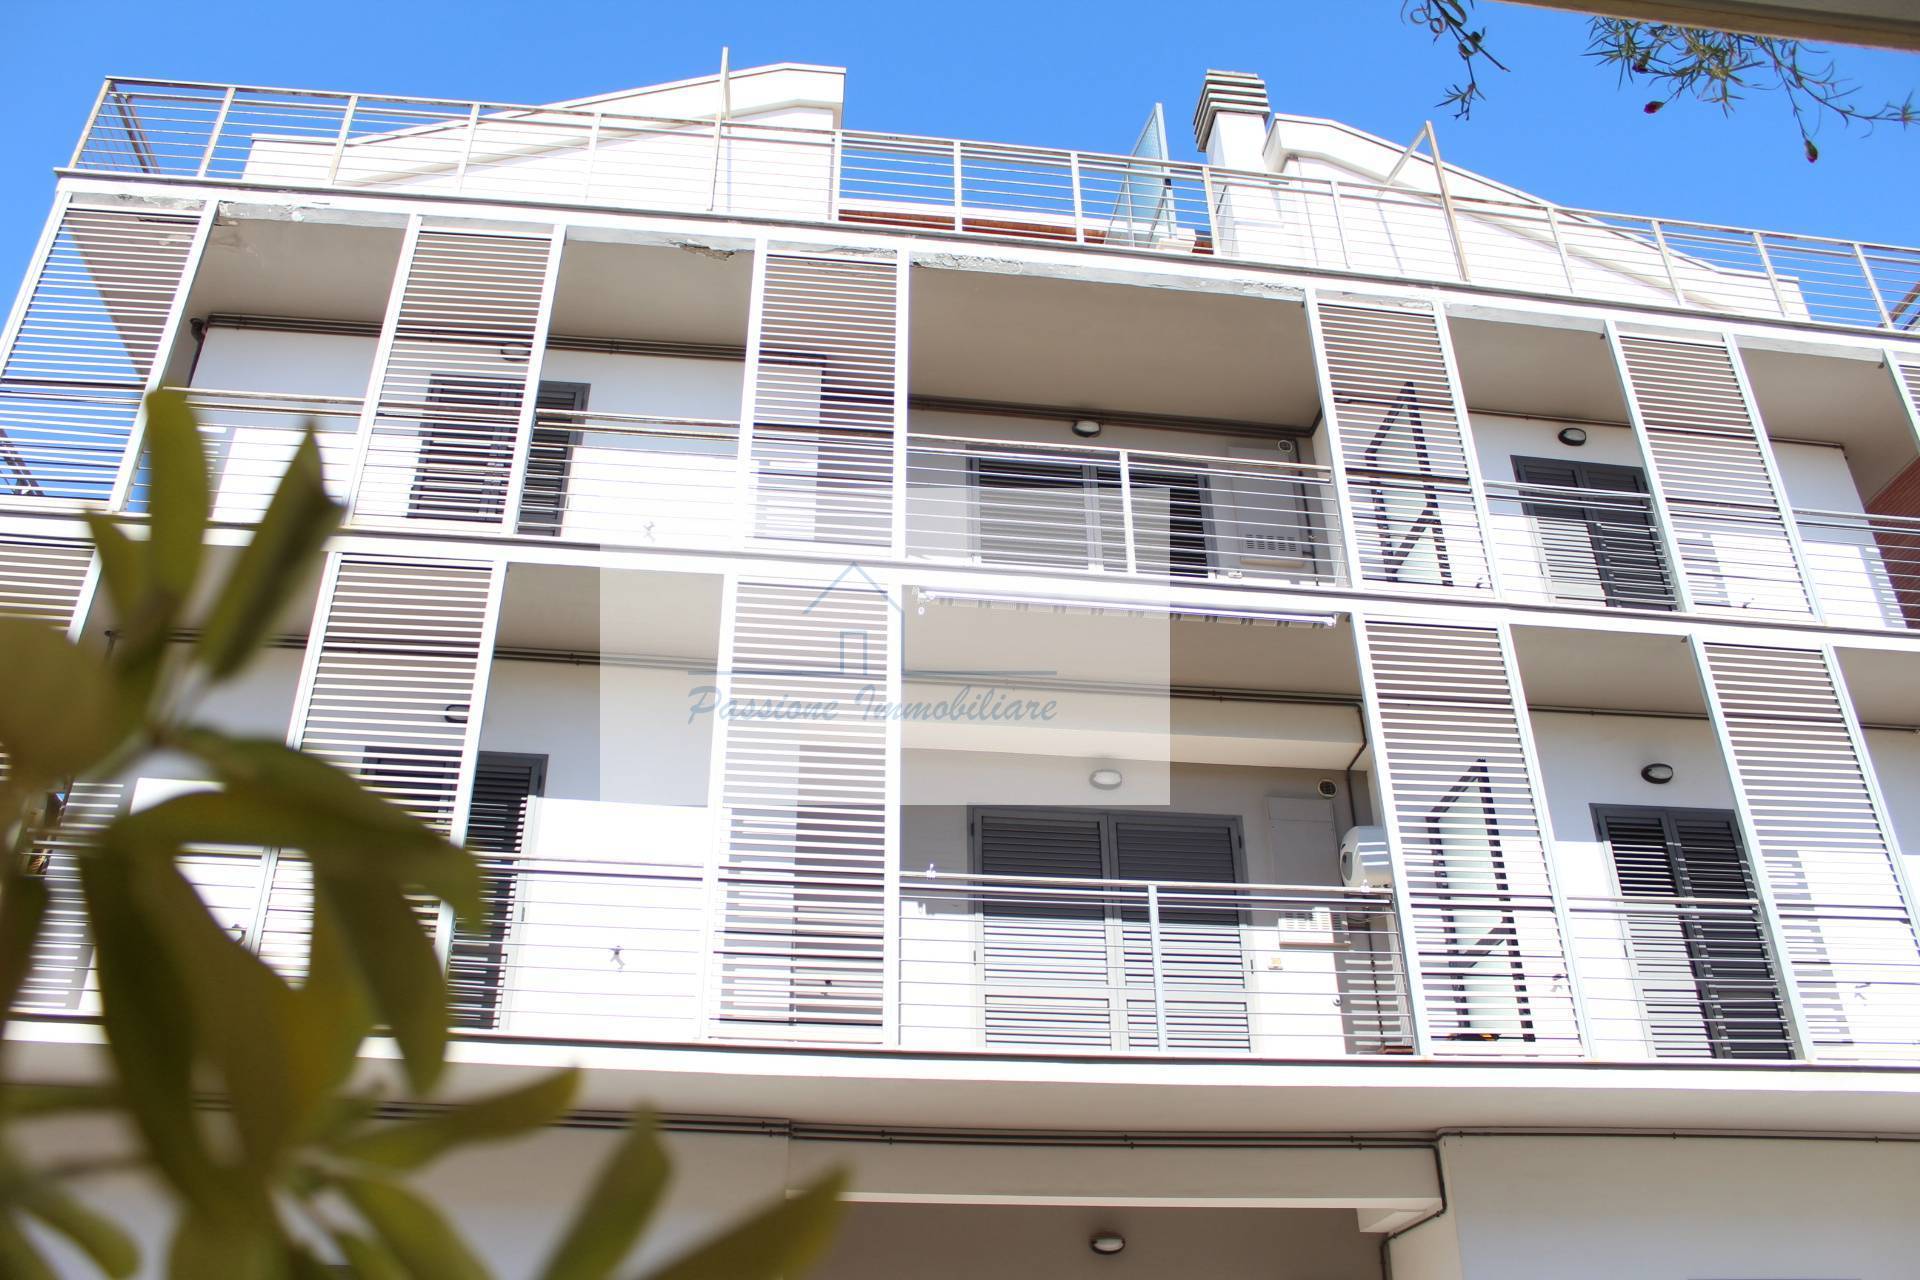 Appartamento in vendita a Alba Adriatica, 2 locali, zona Località: ZonaMare, prezzo € 92.000 | PortaleAgenzieImmobiliari.it